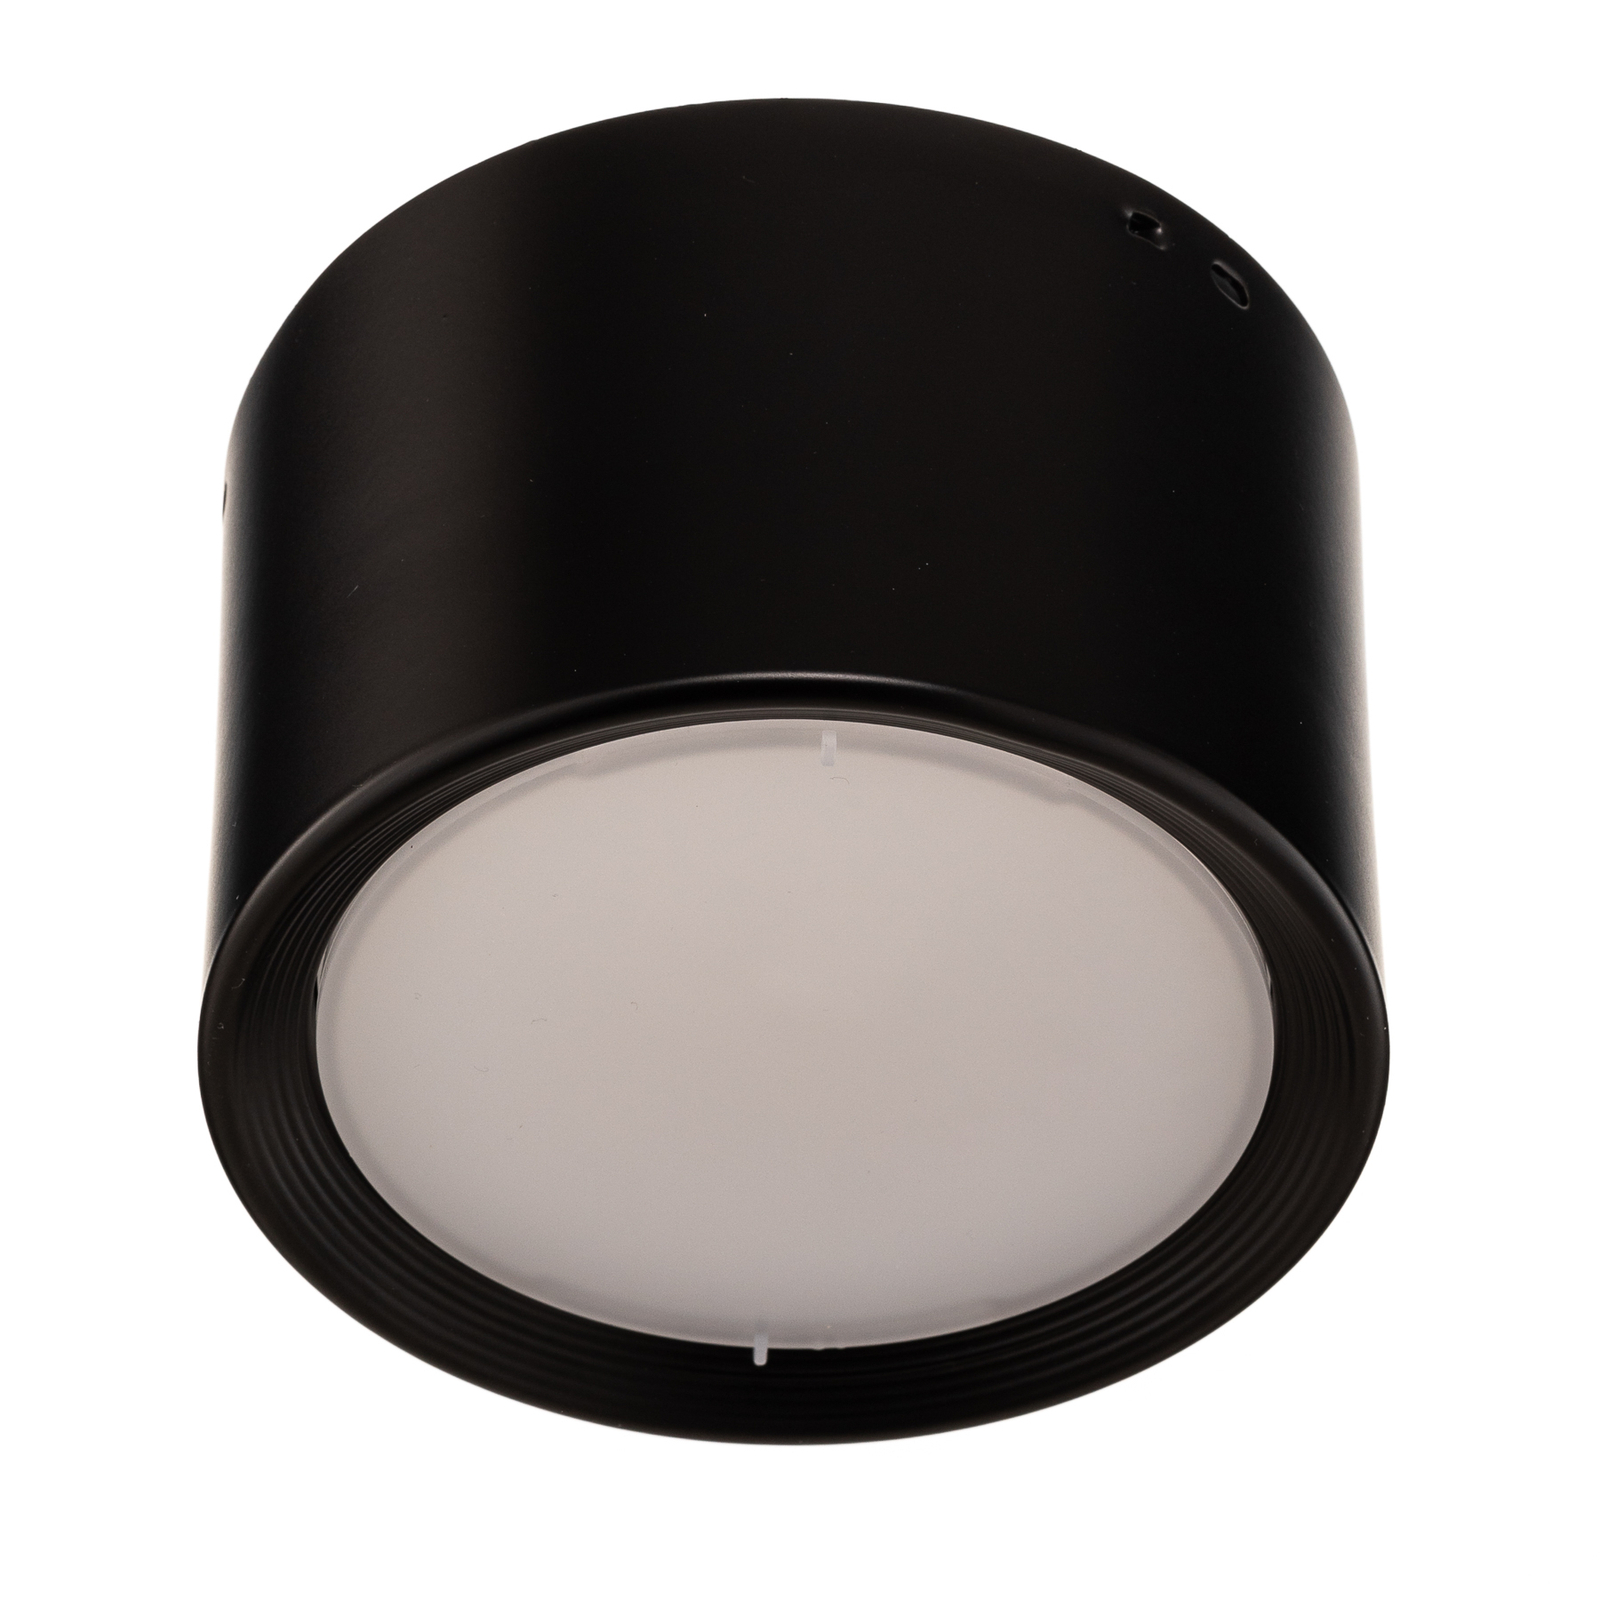 Ita LED-downlight i svart med kupa, Ø 10 cm